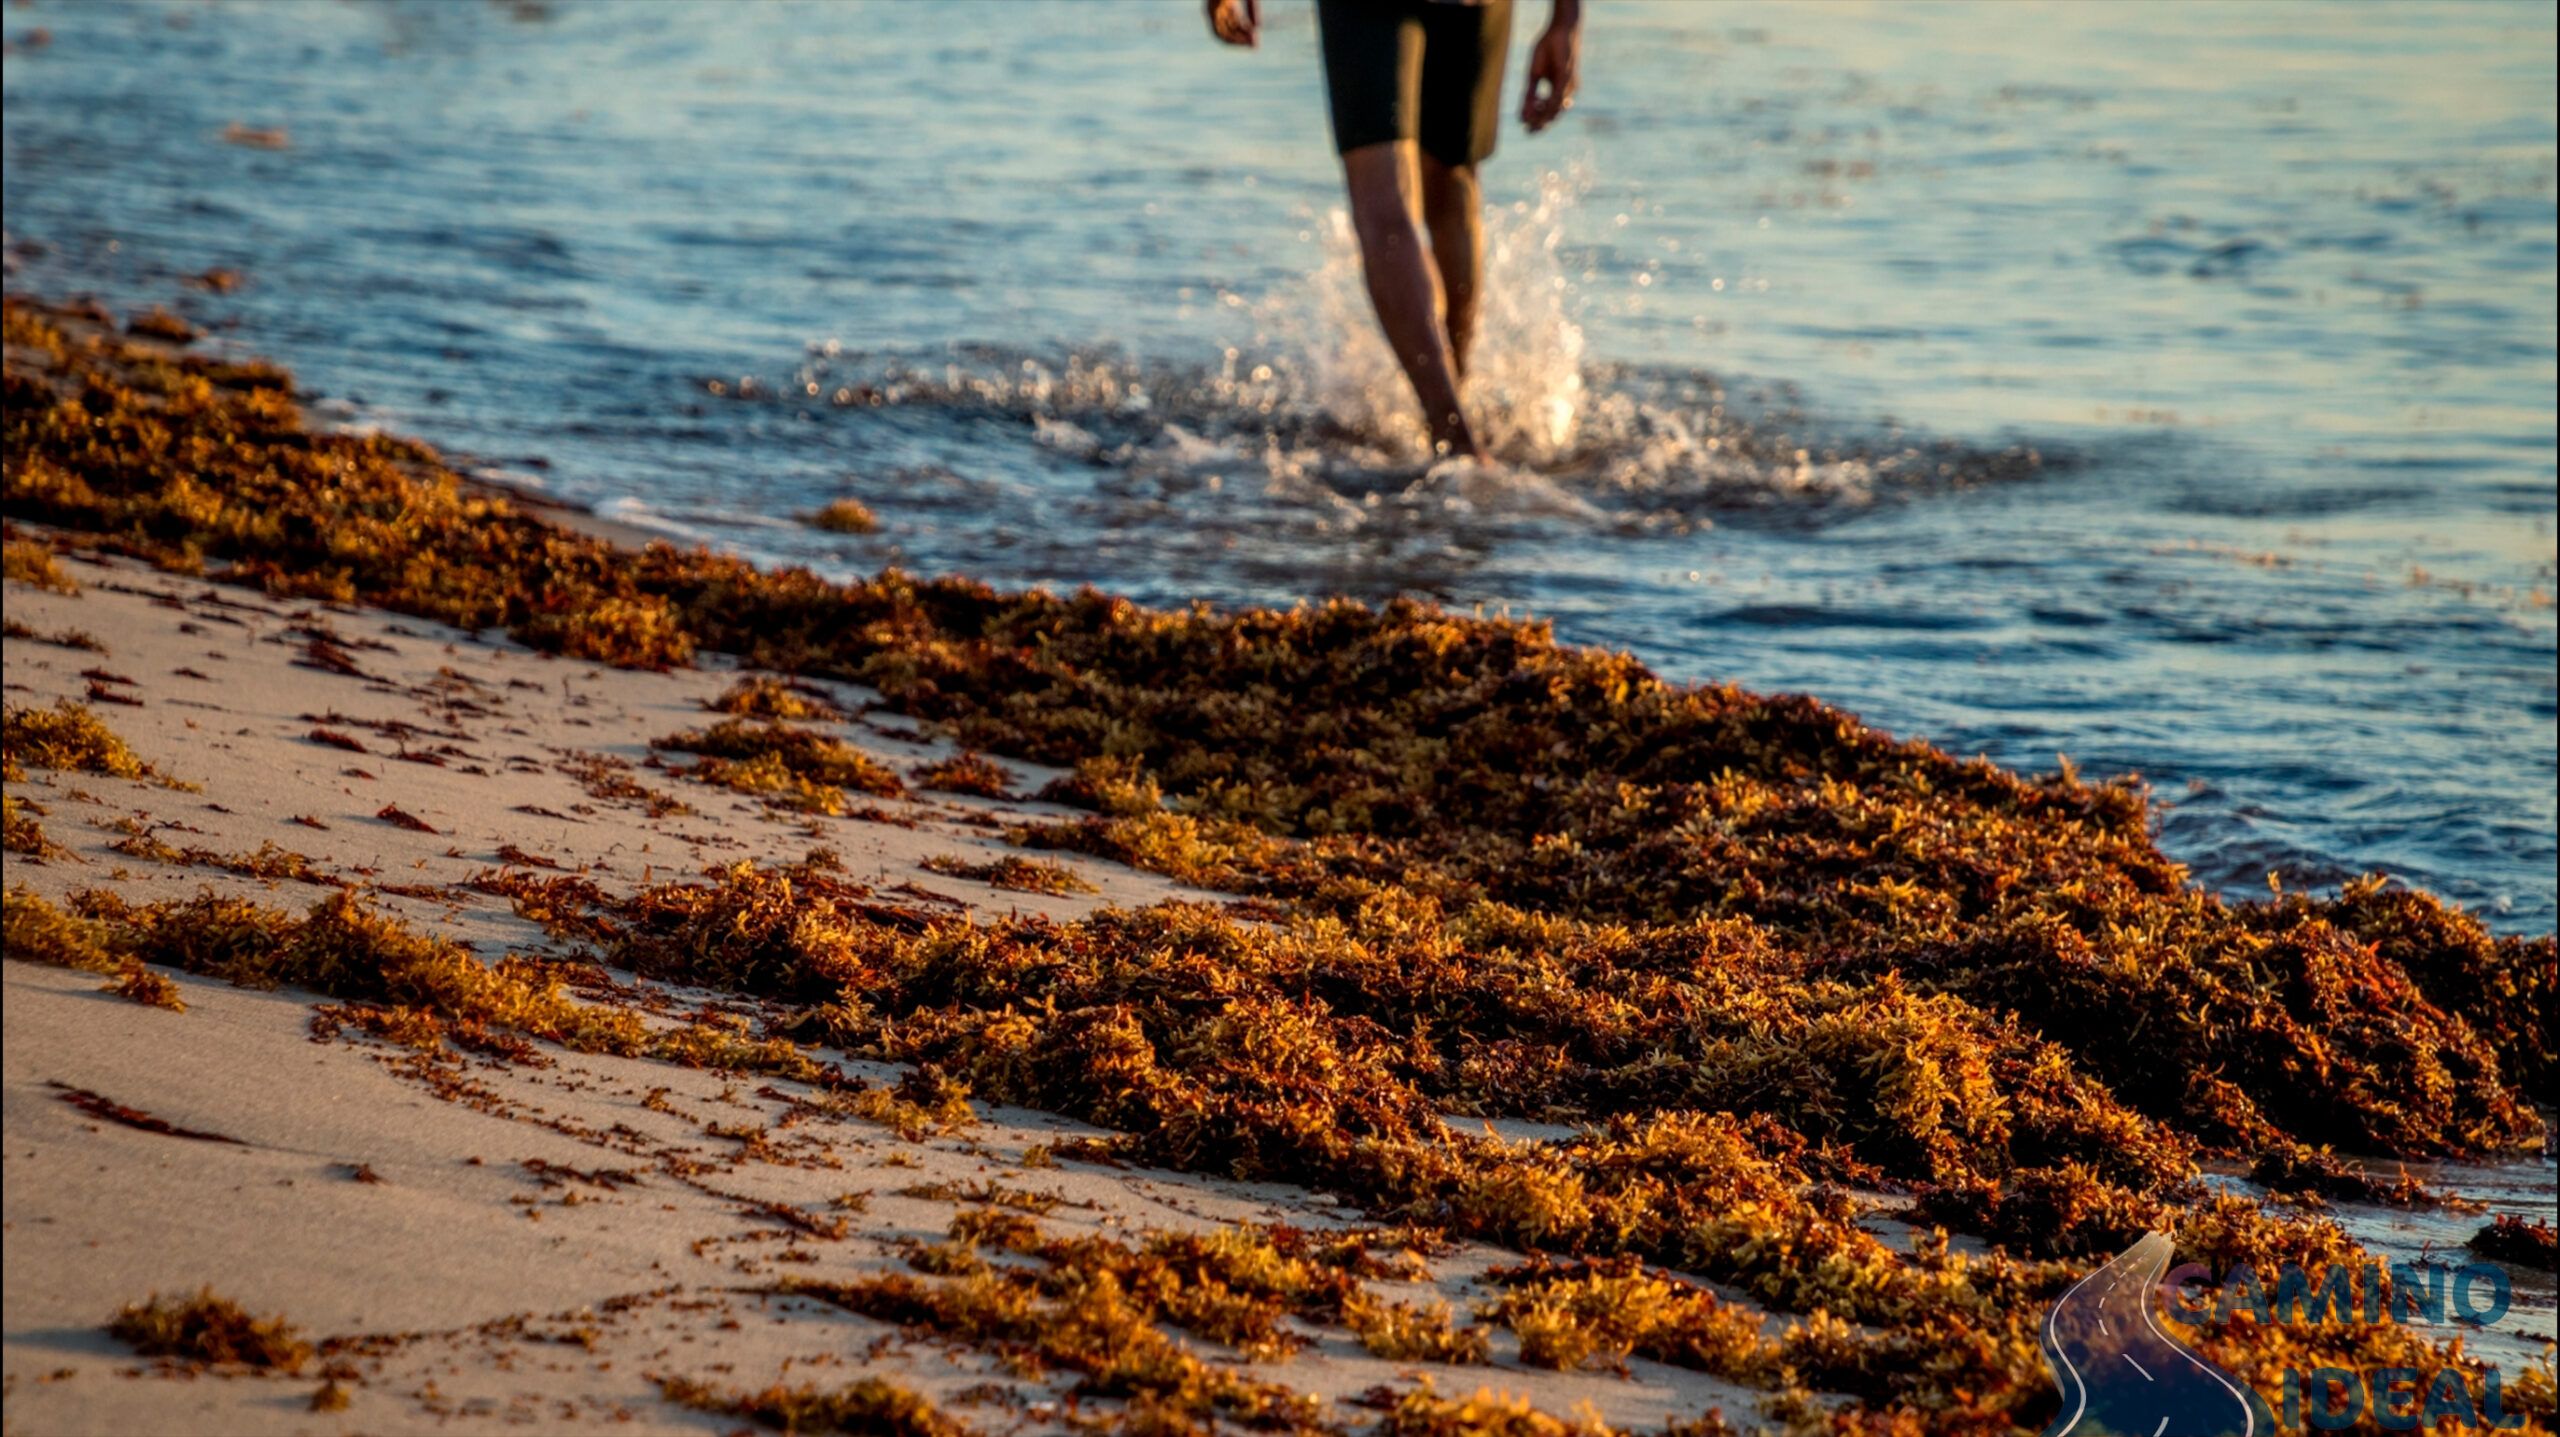 Pies de una persona caminando por el mar, en la arena se puede ver sargazo